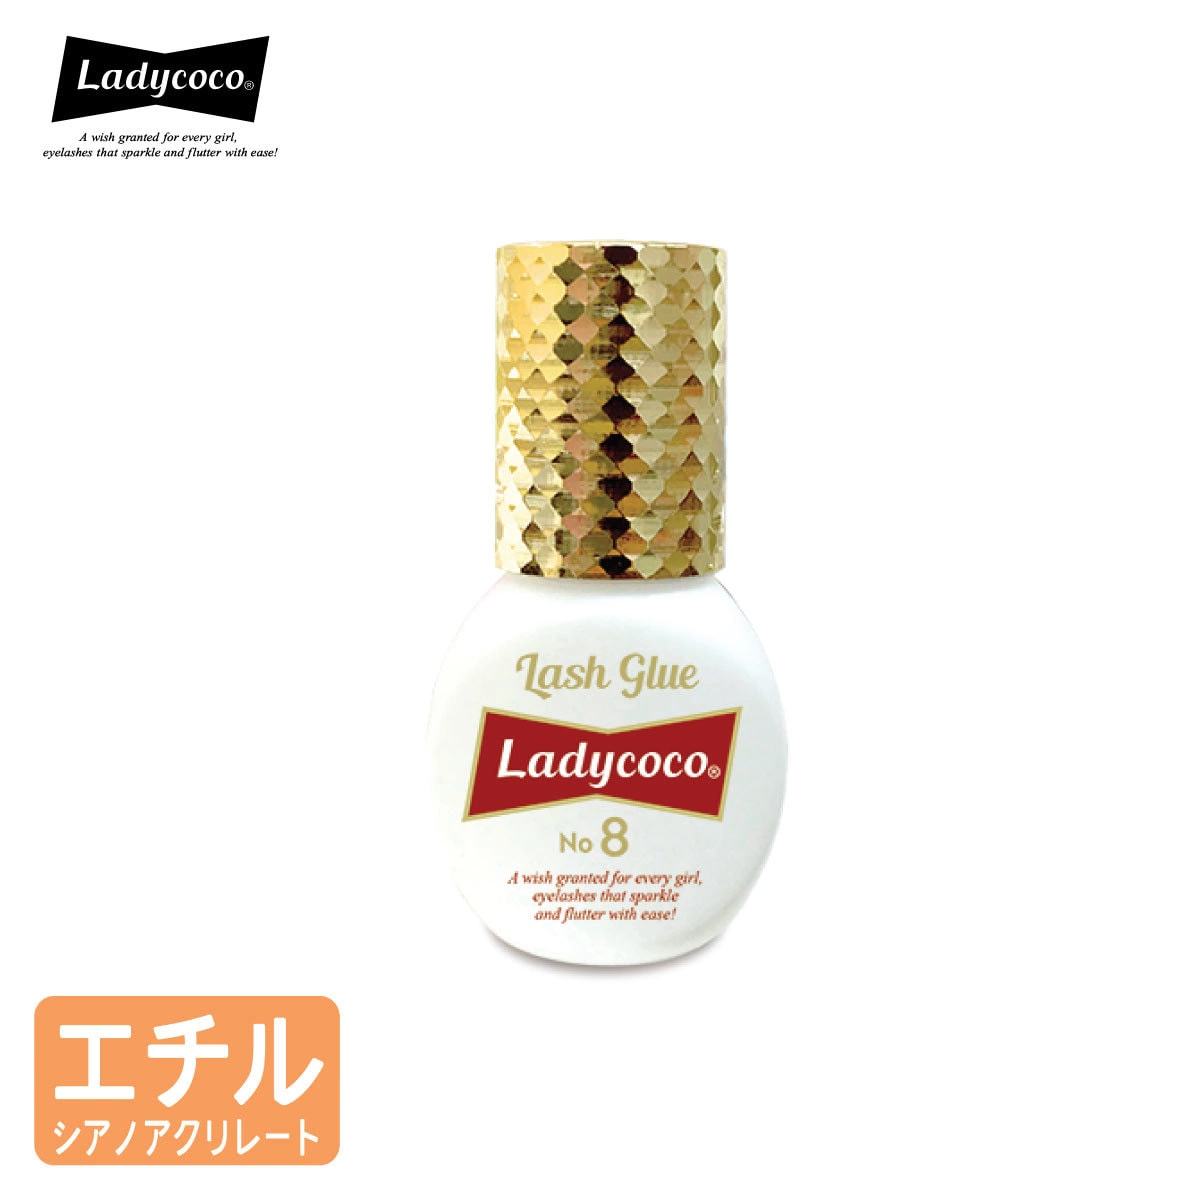 【LADYCOCO】Lash Glue No.8 5ml